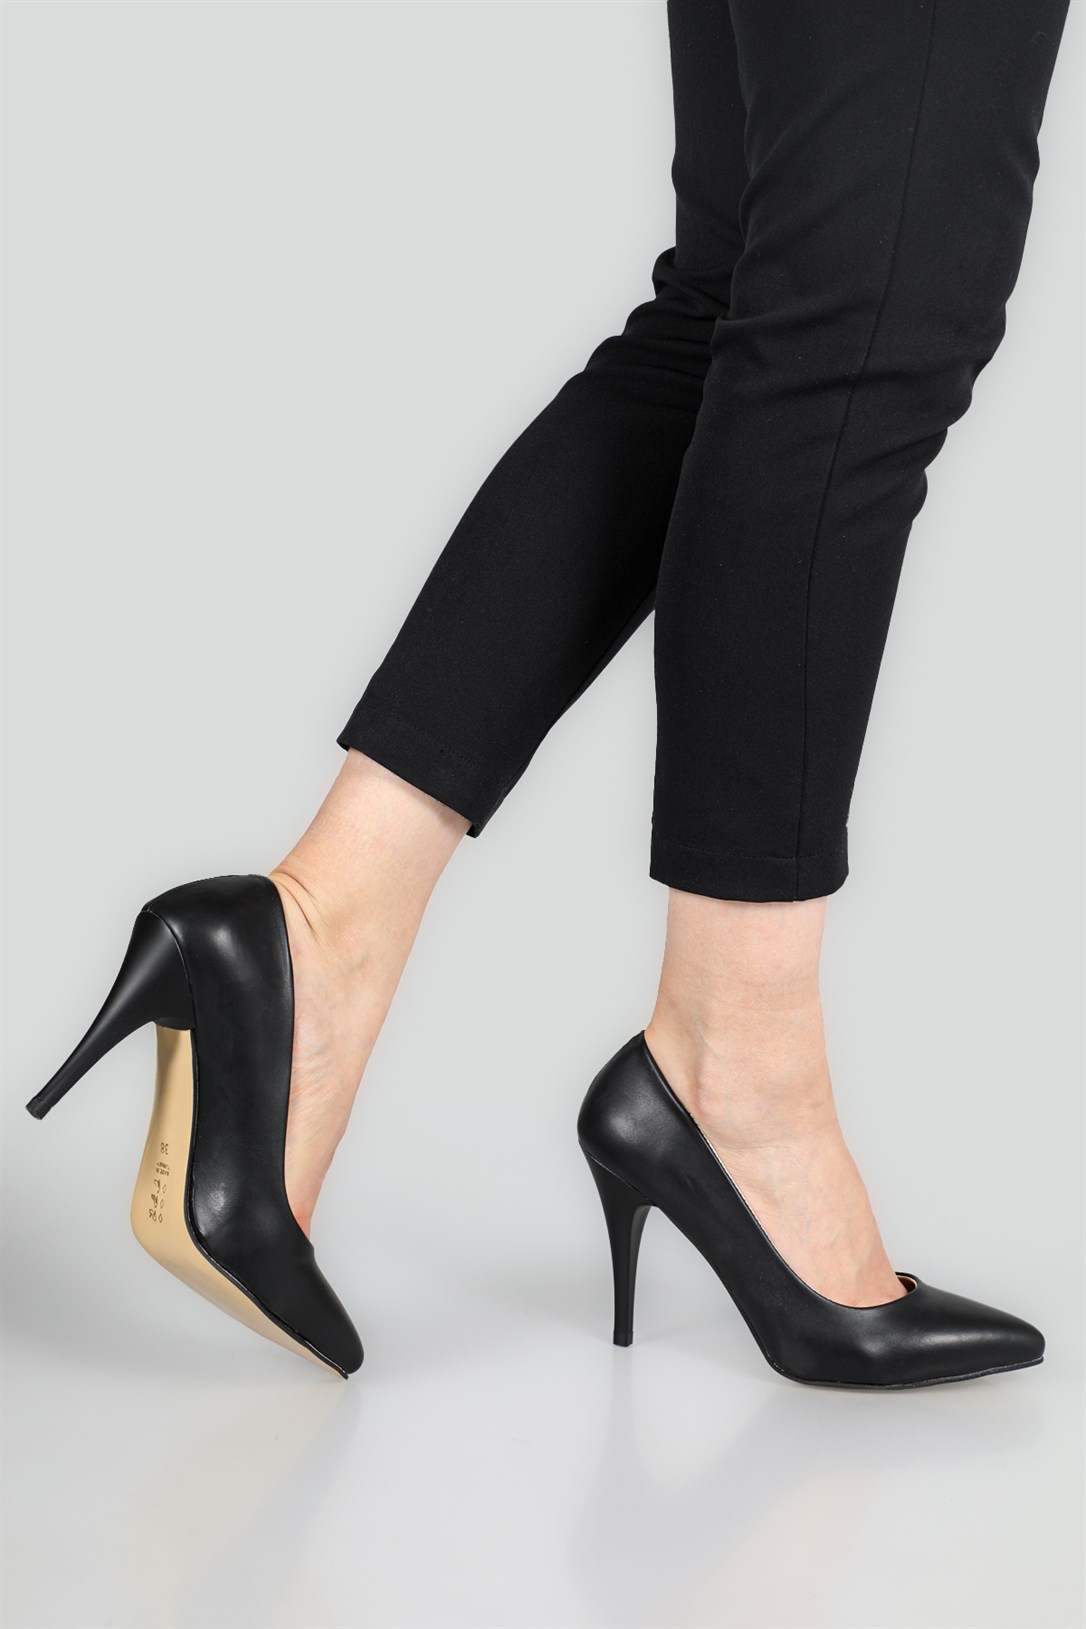 Carla Bella 11 Cm Topuklu Stiletto Siyah Kadın Ayakkabı Sitare 09 | Ayakkabı  City